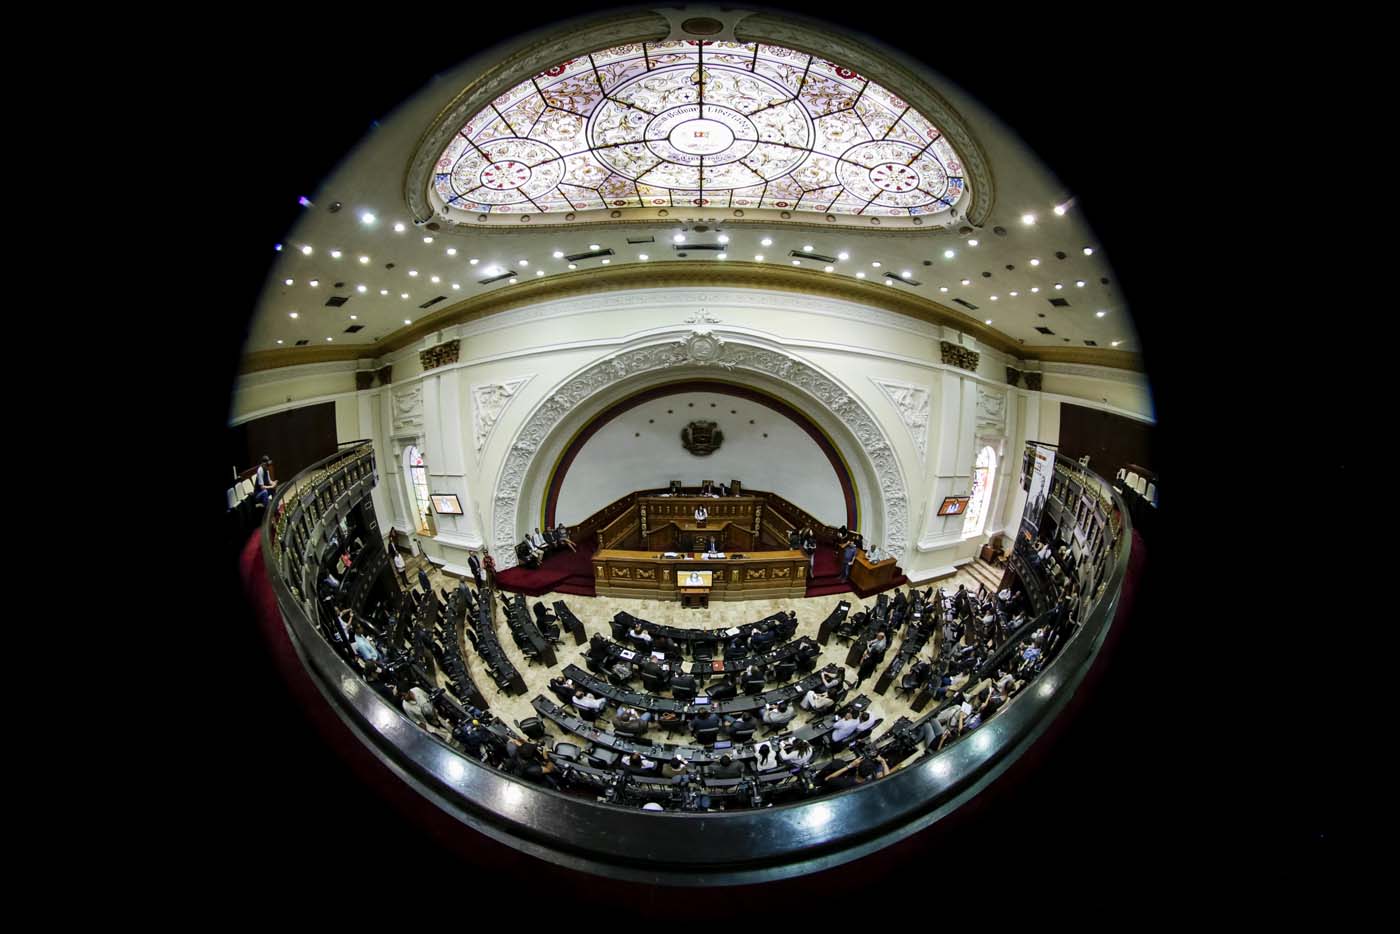   Fotografía tomada con lente ojo de pez muestra una vista general del hemiciclo de sesiones del palacio federal legislativo de la Asamblea Nacional  EFE/Miguel Gutiérrez